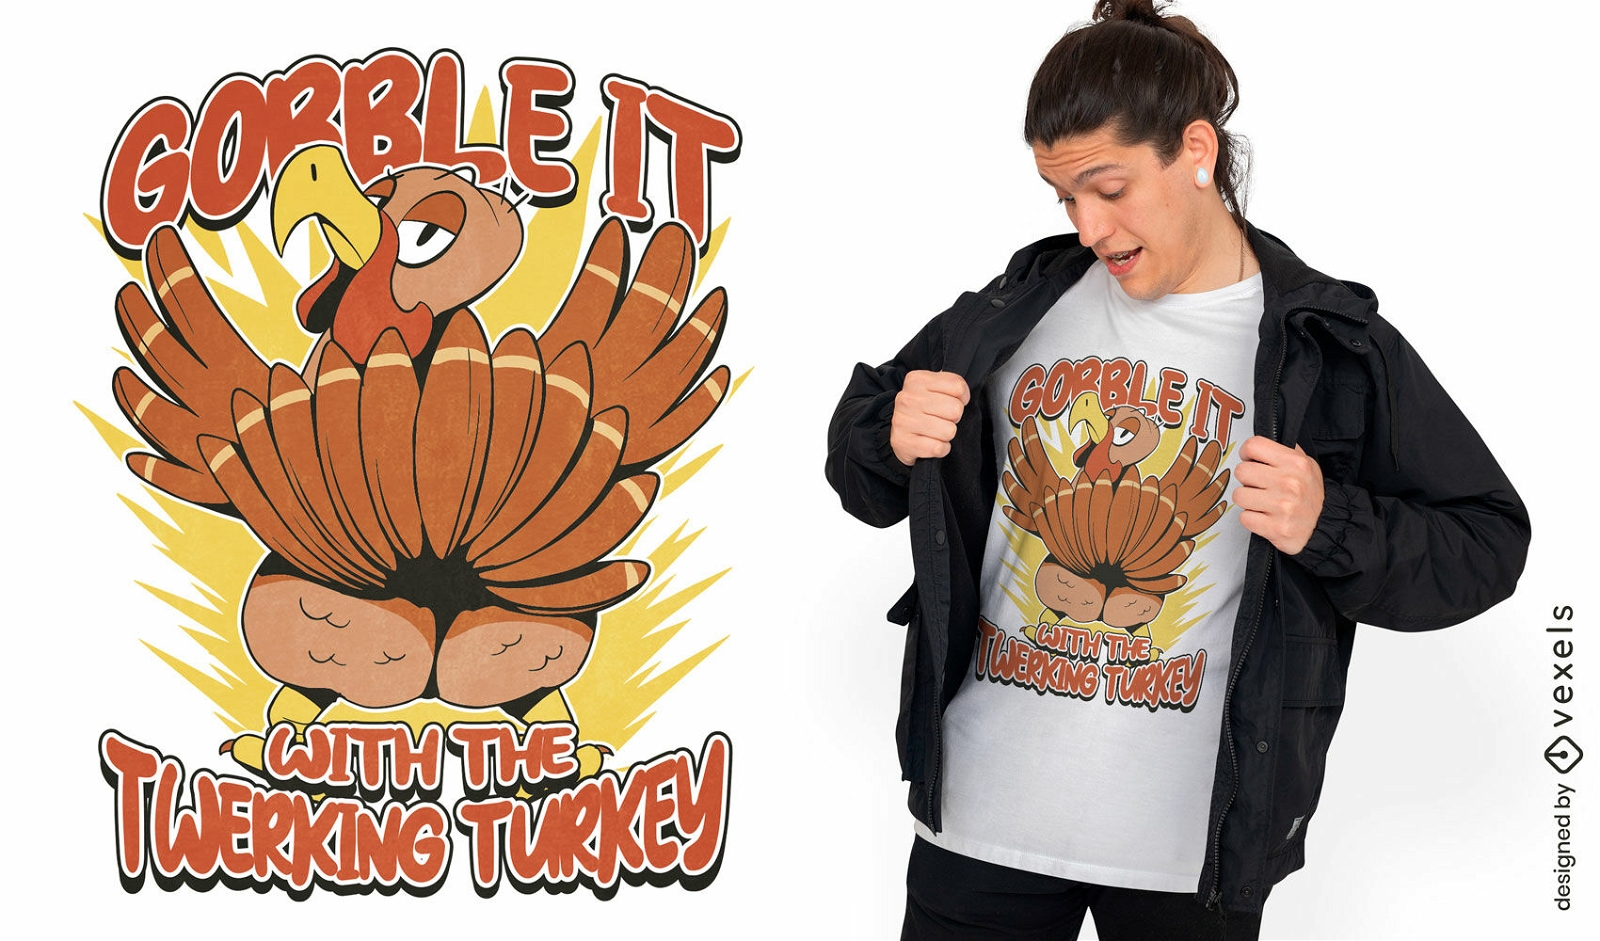 Twerking turkey t-shirt design